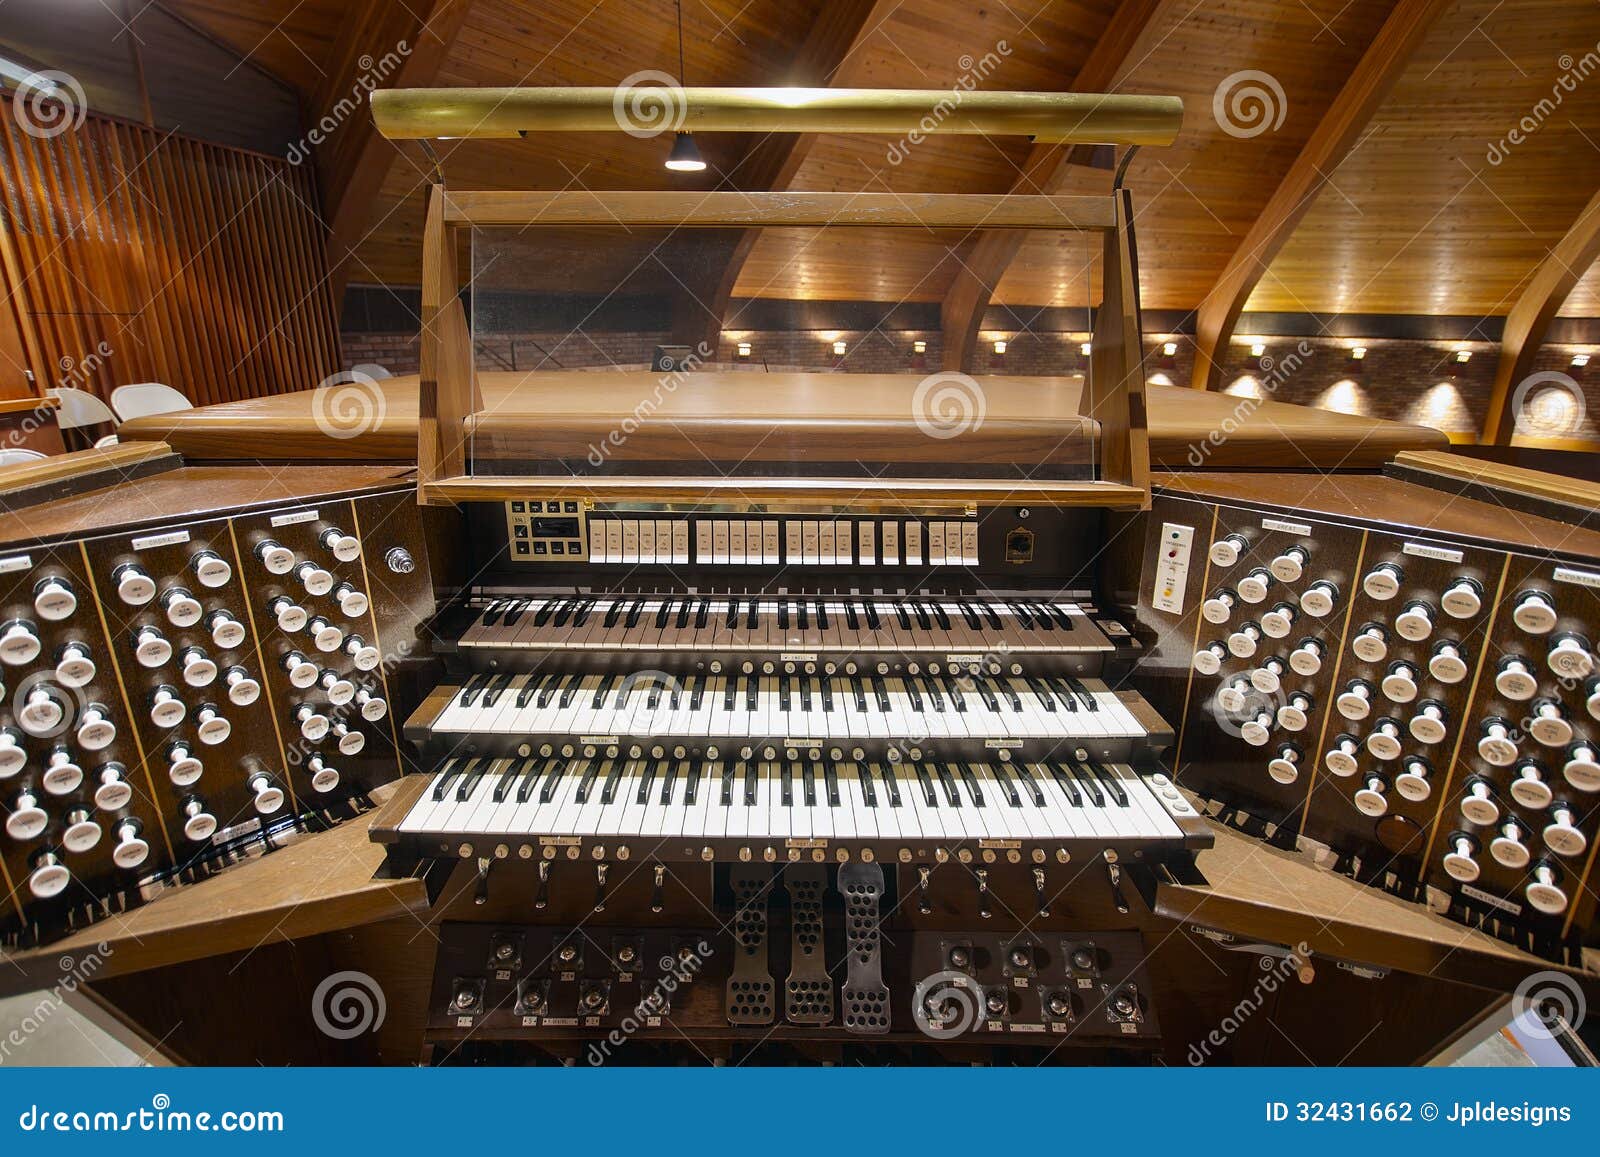 church organ clipart - photo #44